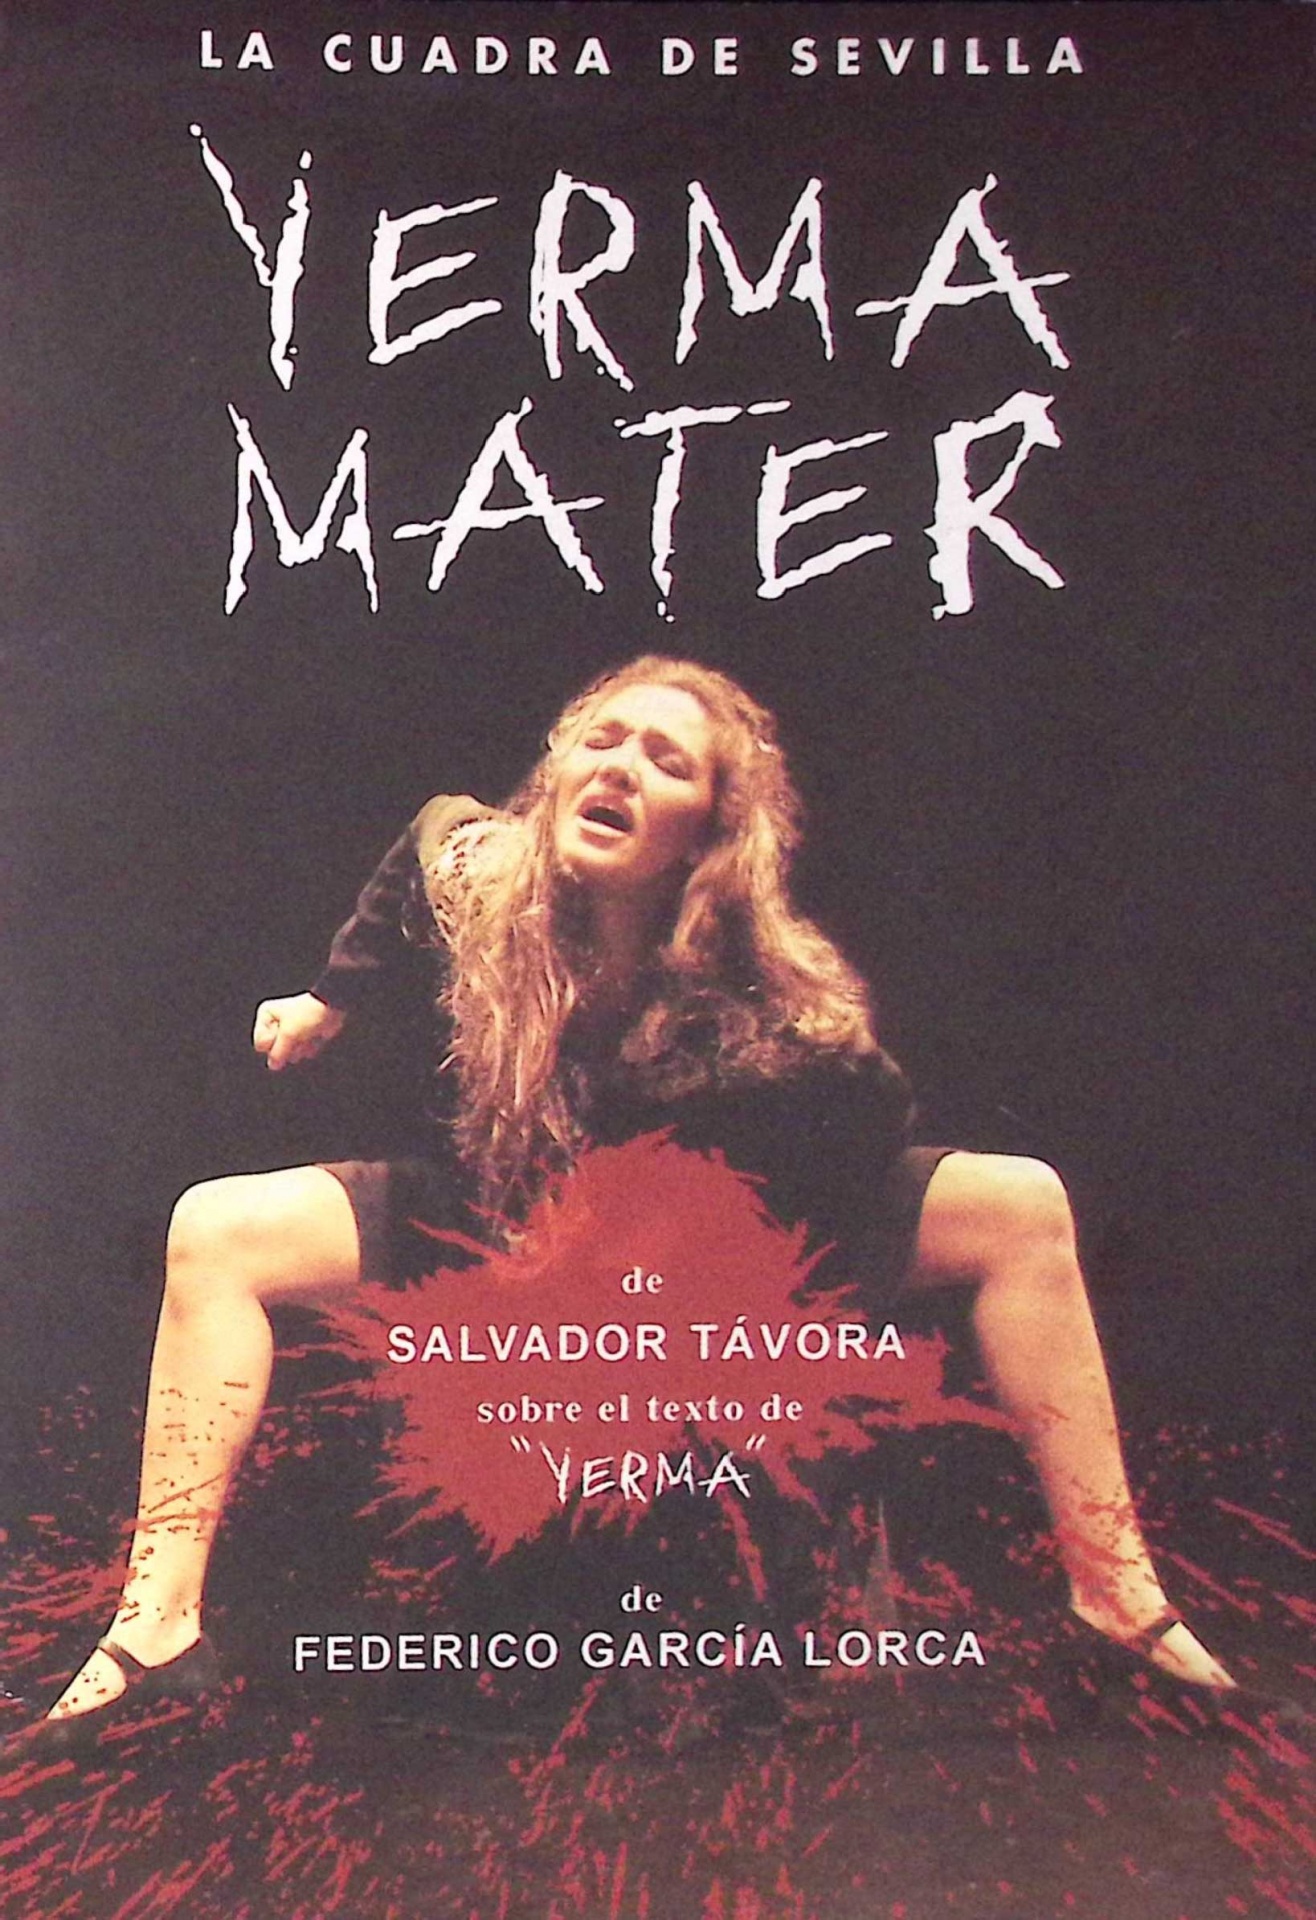 Yerma Mater de Salvador Távora, sobre el texto de "Yerma" de Federico García Lorca. La Cuadra de Sevilla